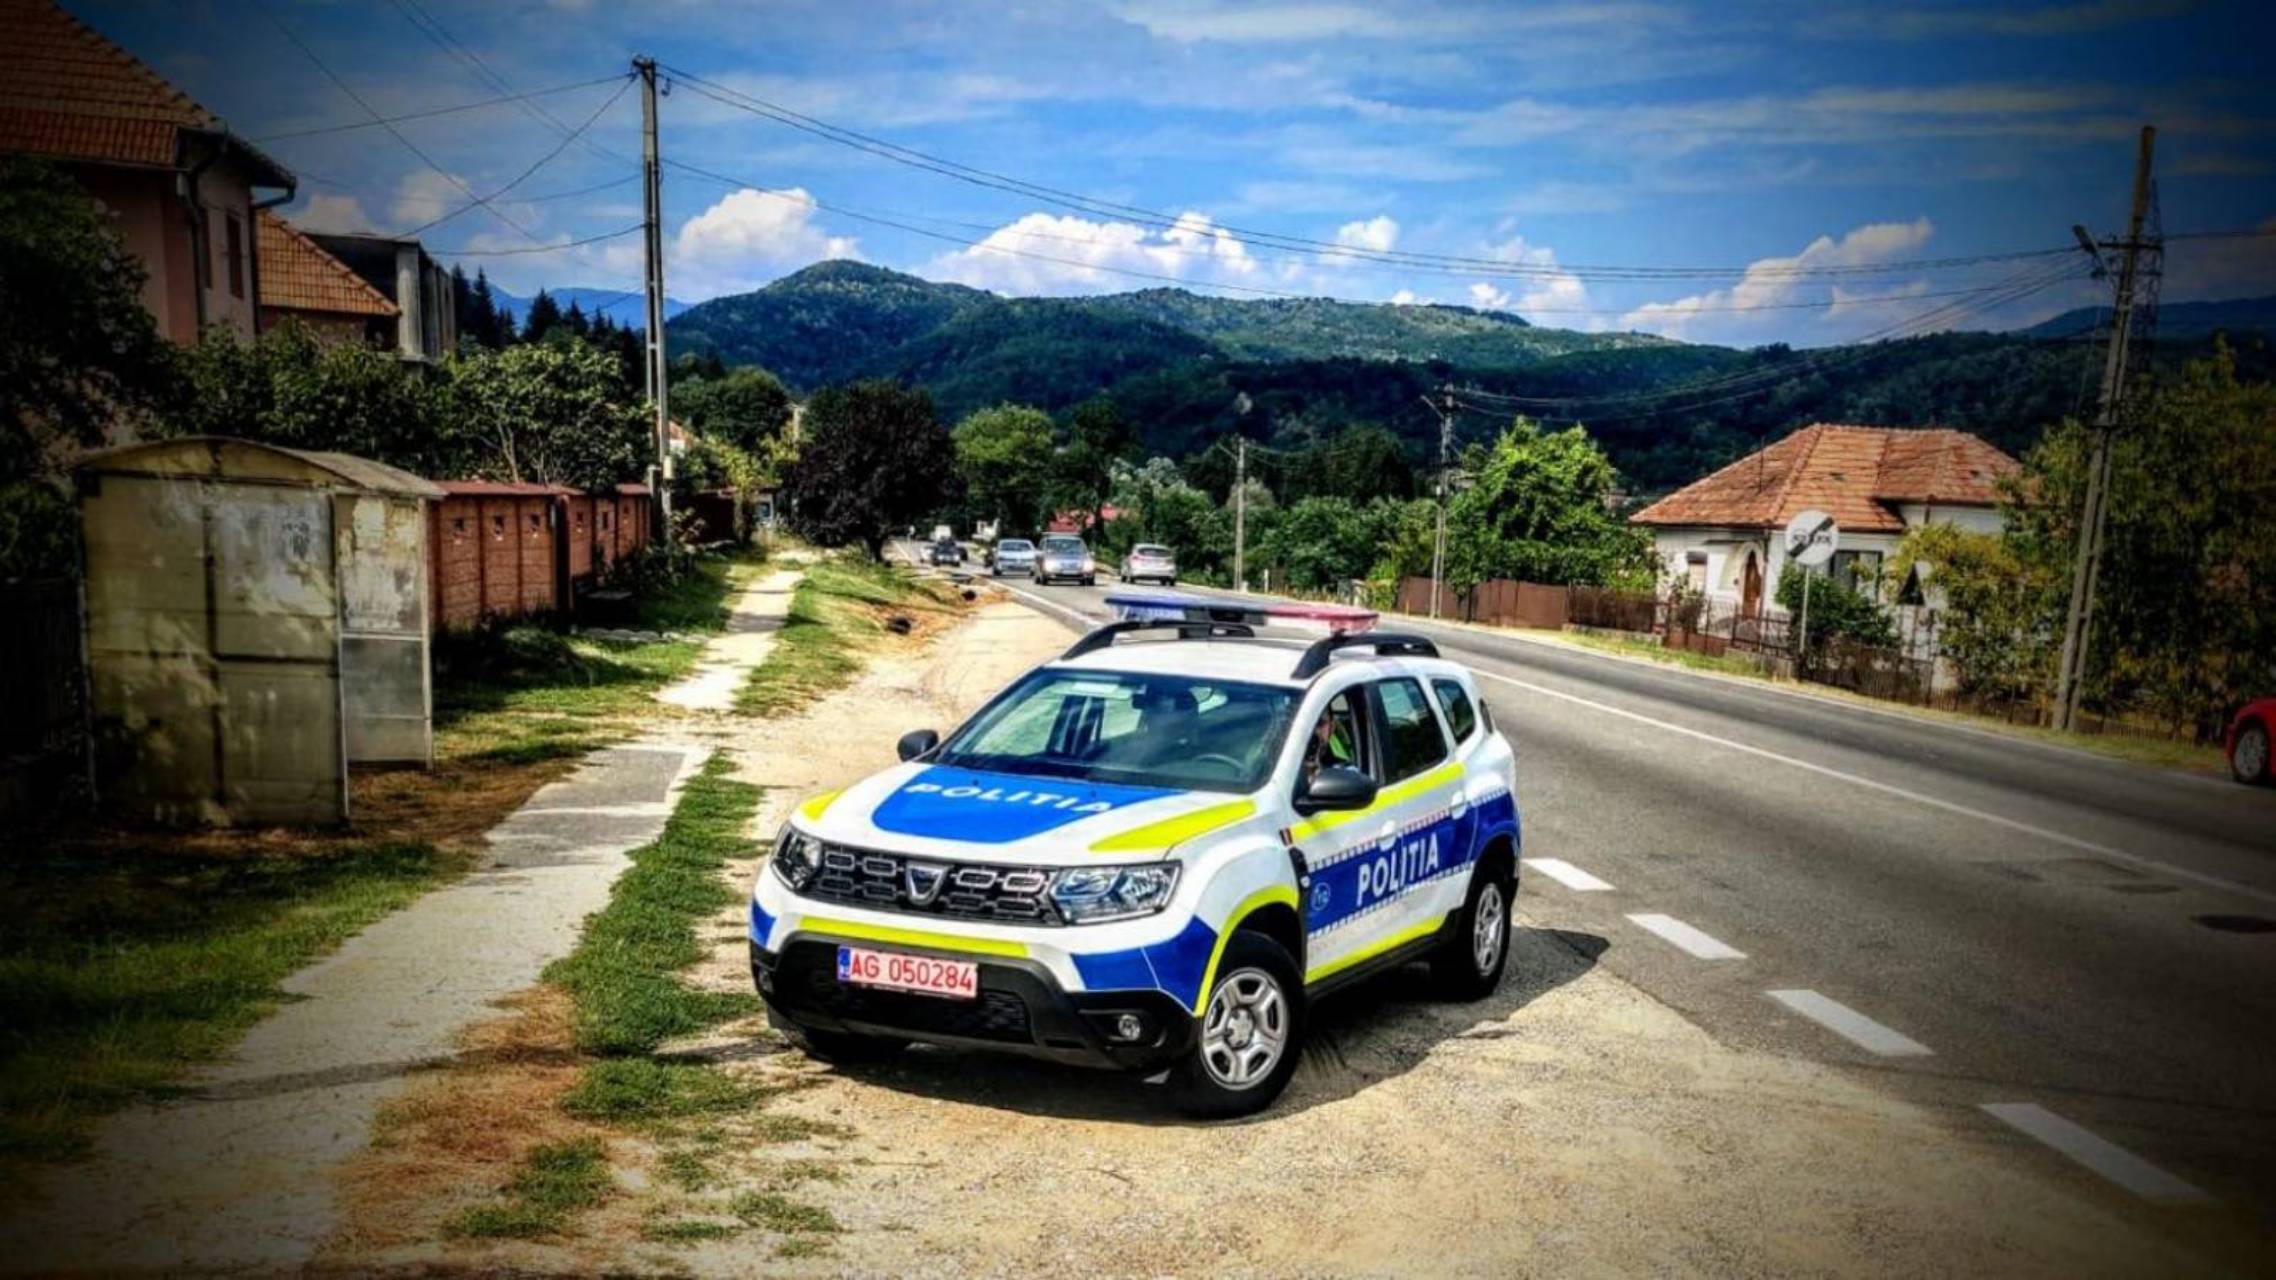 Romanian poliisi tekee usein tarkastuksia